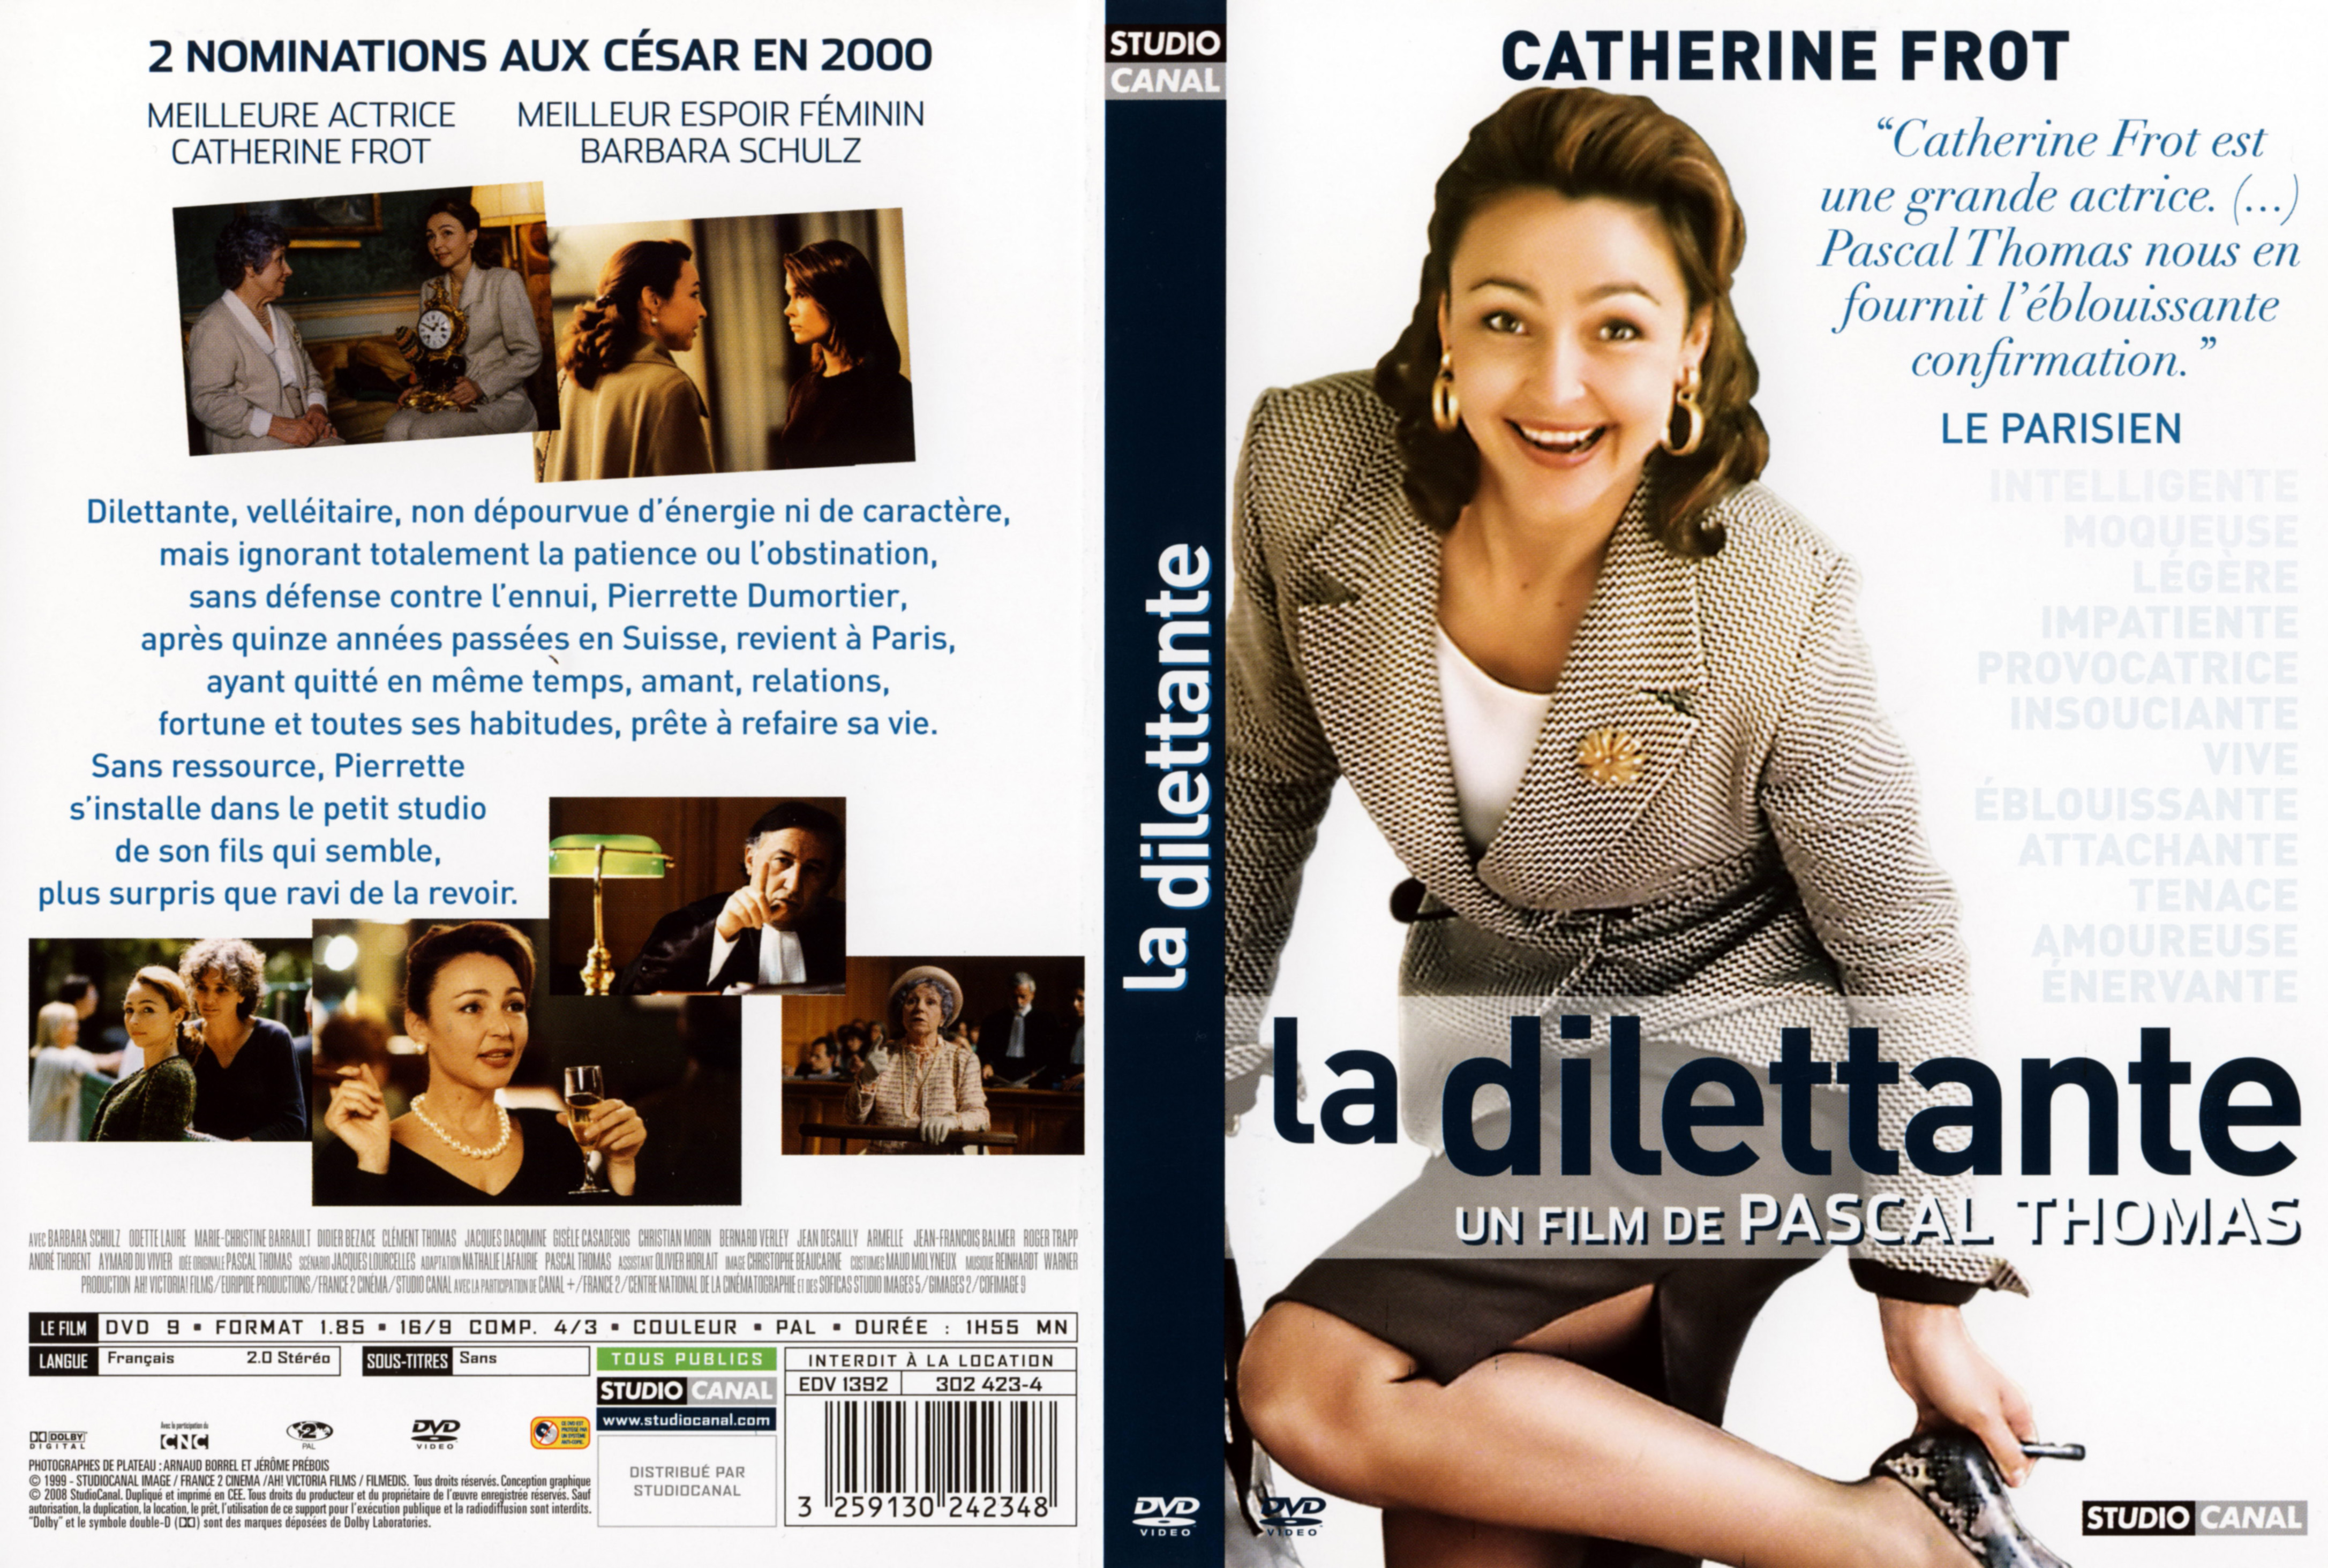 Jaquette DVD La dilettante